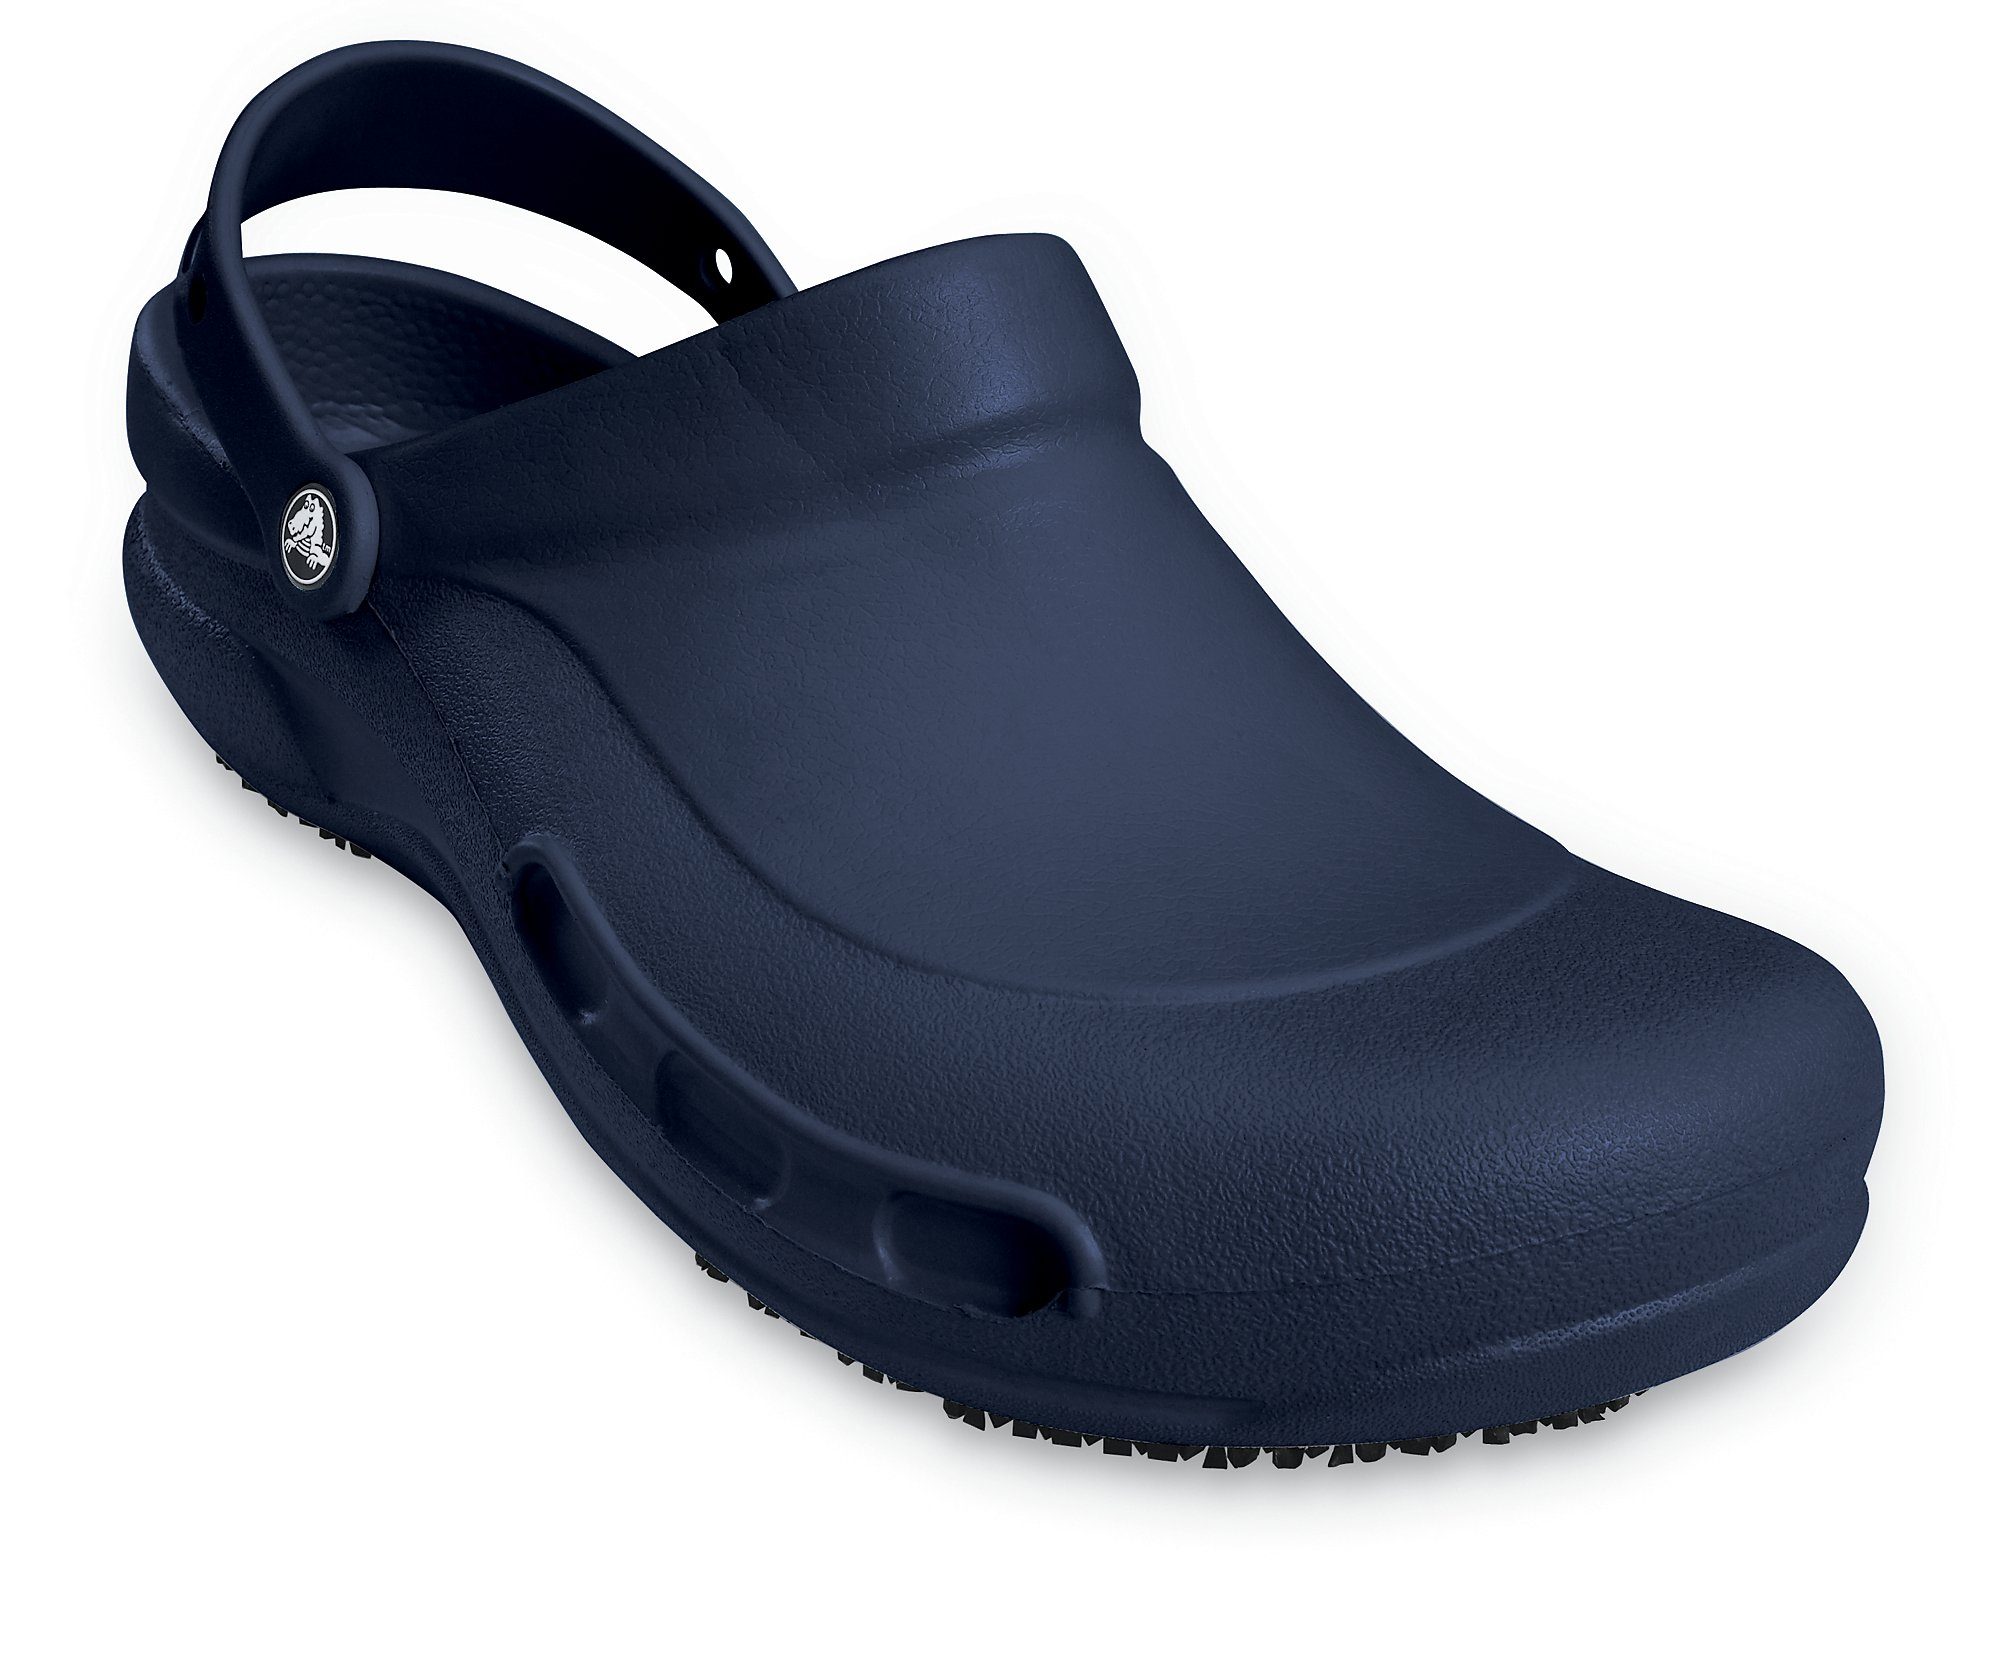 Schuhe Sicherheitsschuhe Crocs Bistro Speziell für Mitarbeiter im Hotel-, Gaststätten- und Gesundheitsbereich Clog mit geschloss